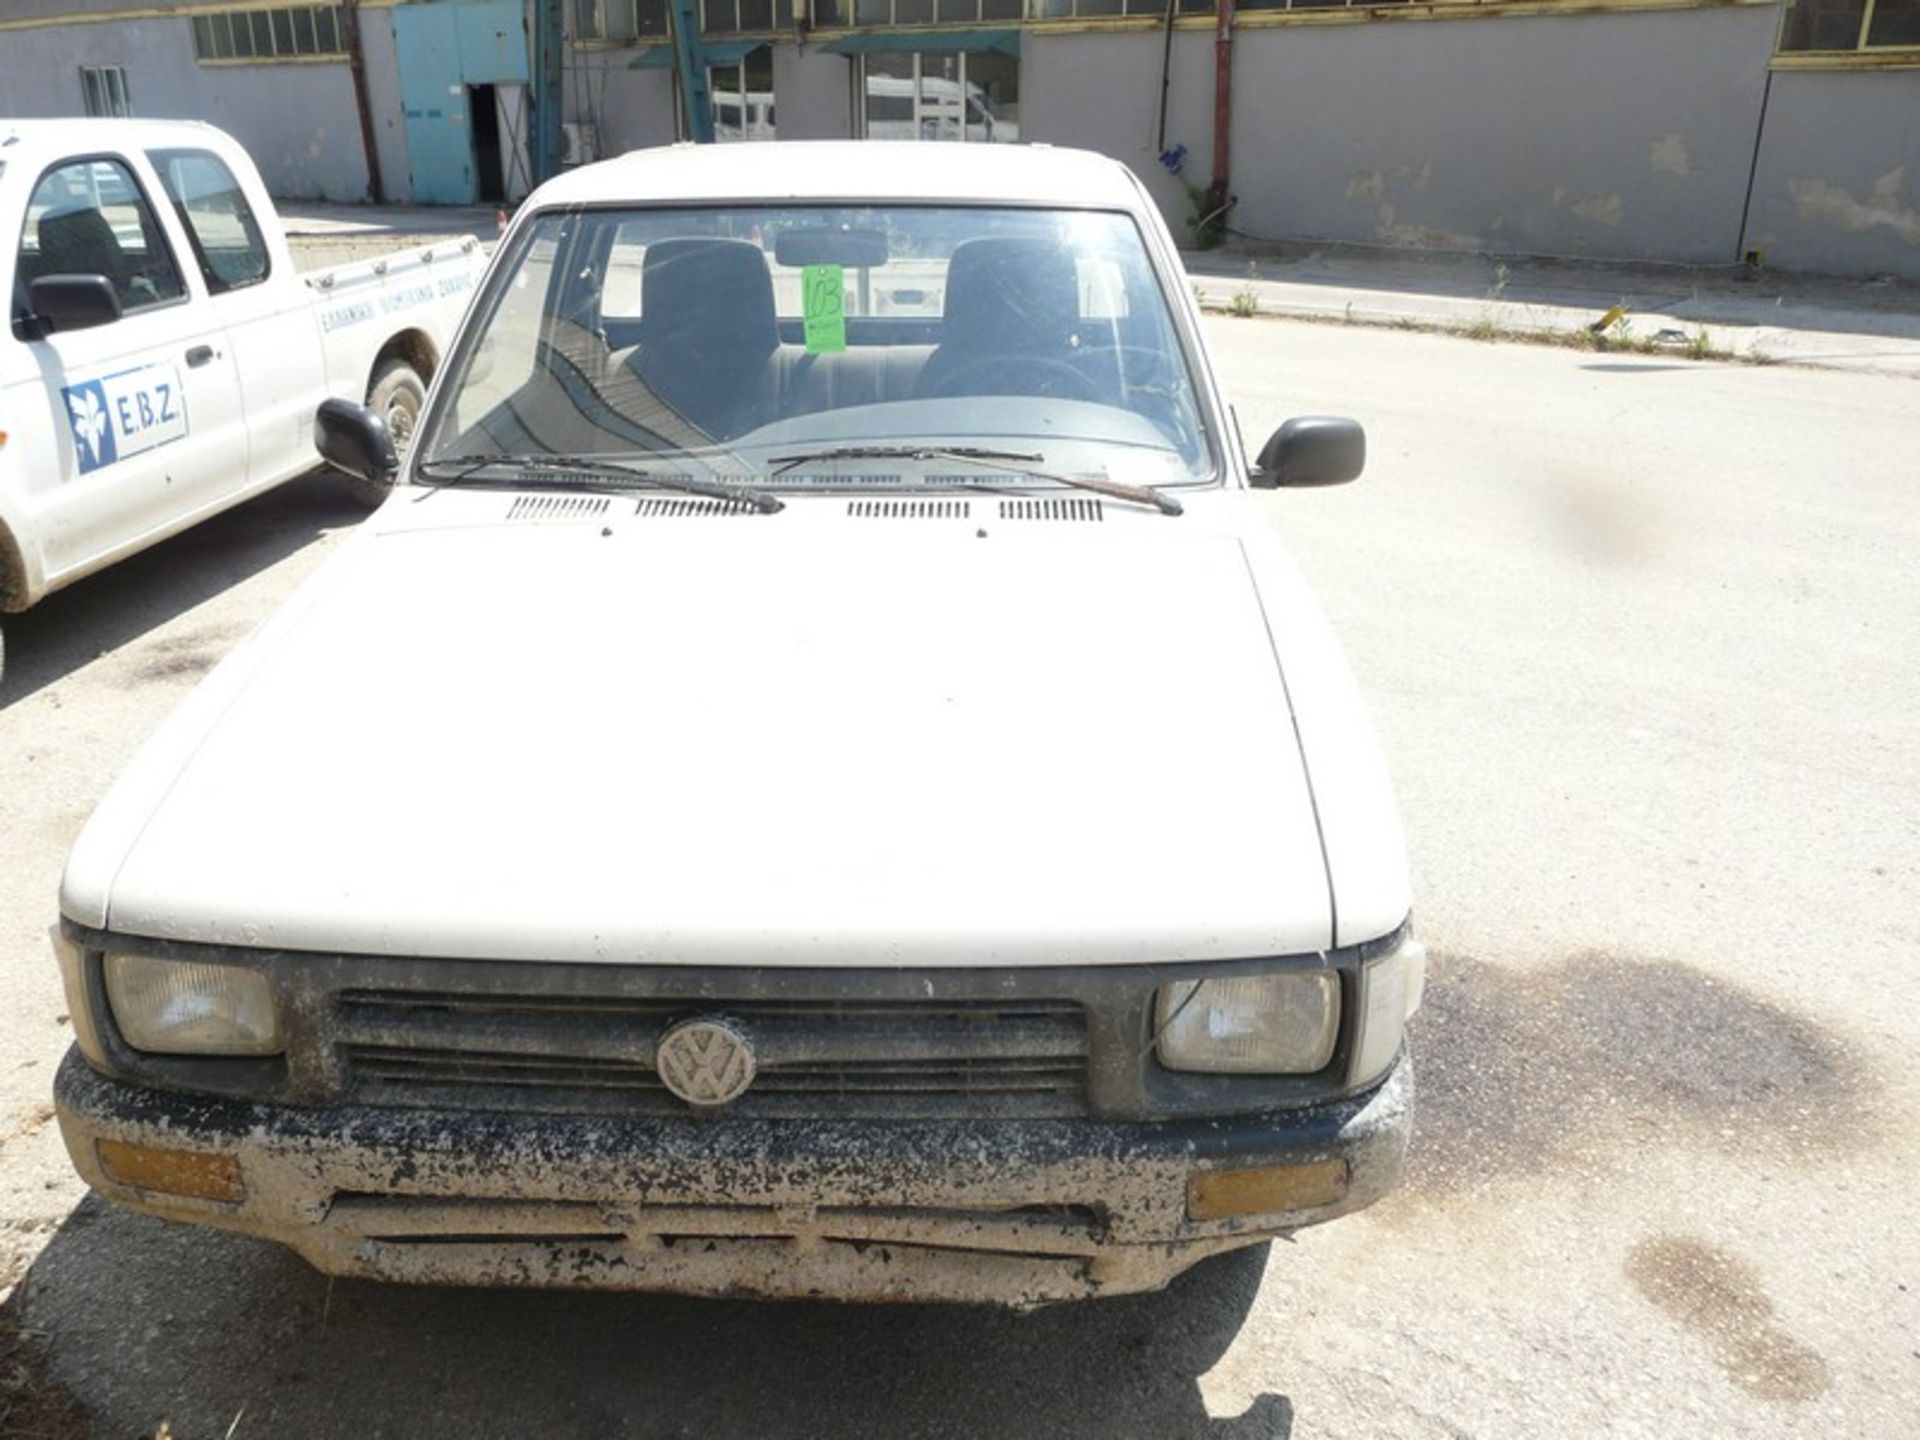 VW TARO 2,4D, KM: 186970, DIESEL, REG: NBY 4241, Year: 1996 (Located in Greece - Orestiada) Greek